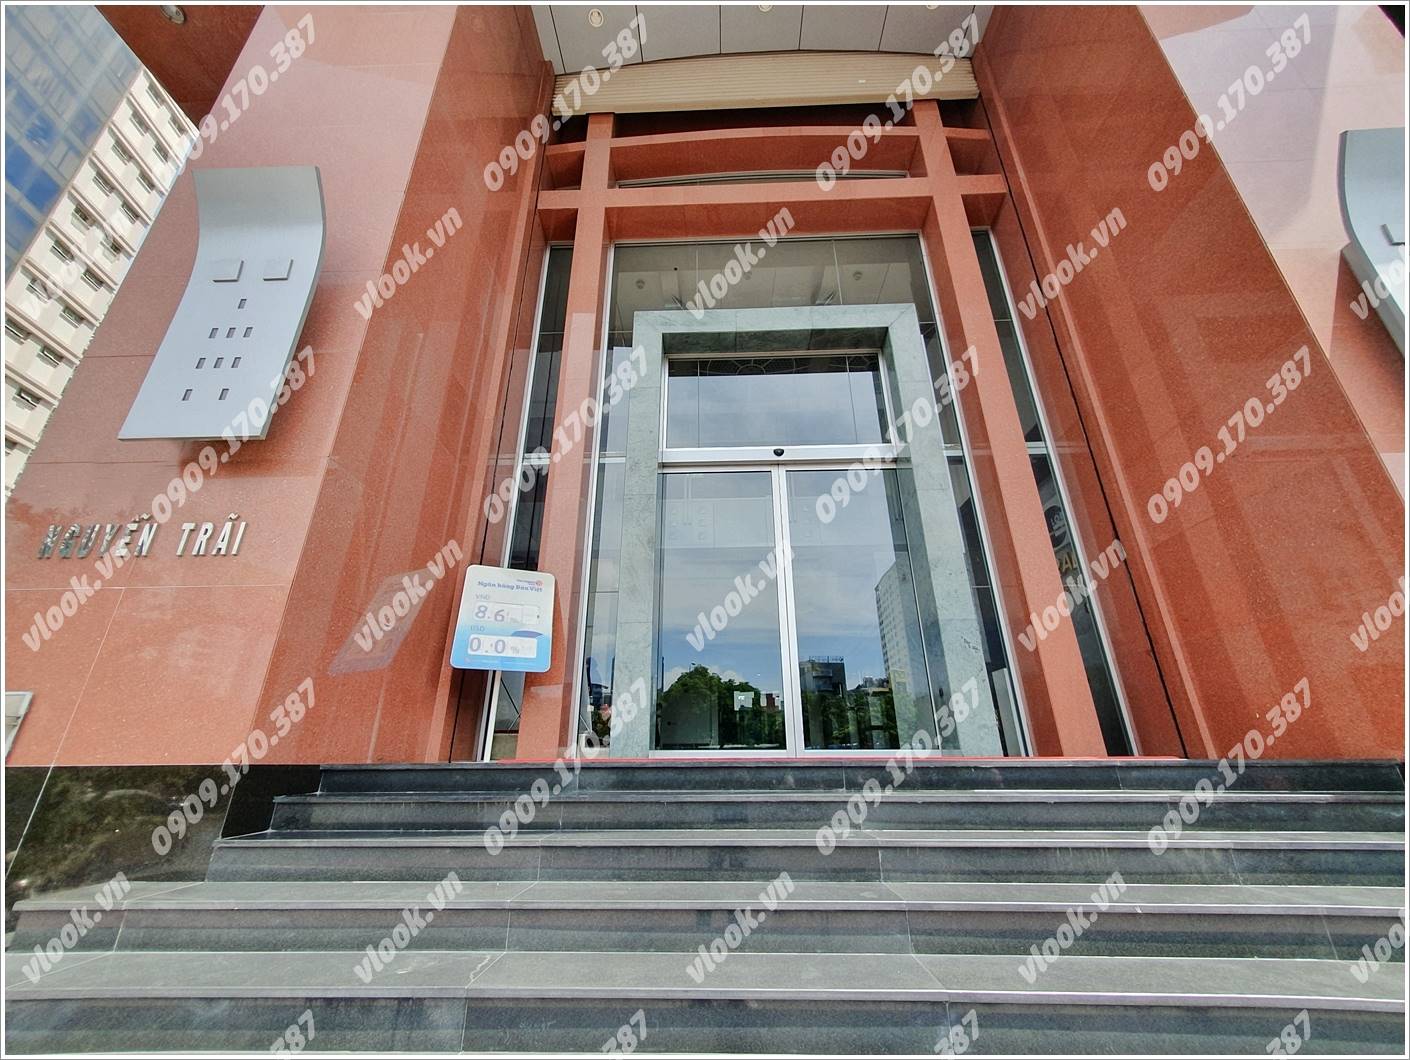 Cao ốc cho thuê văn phòng Central Park Office Building, Nguyễn Trãi, Quận 1, TPHCM - vlook.vn